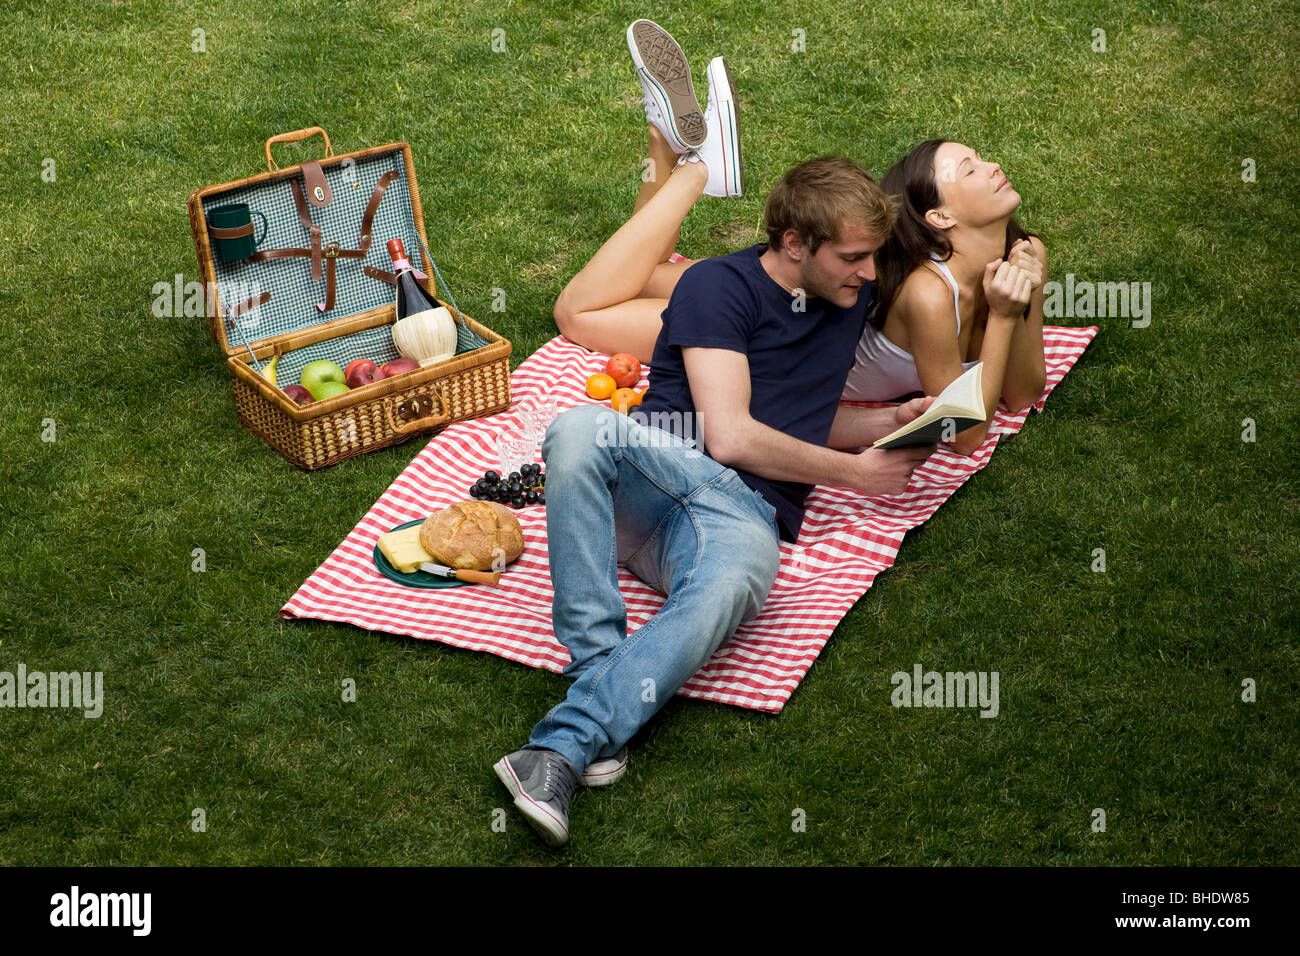 couple, picnic Stock Photo